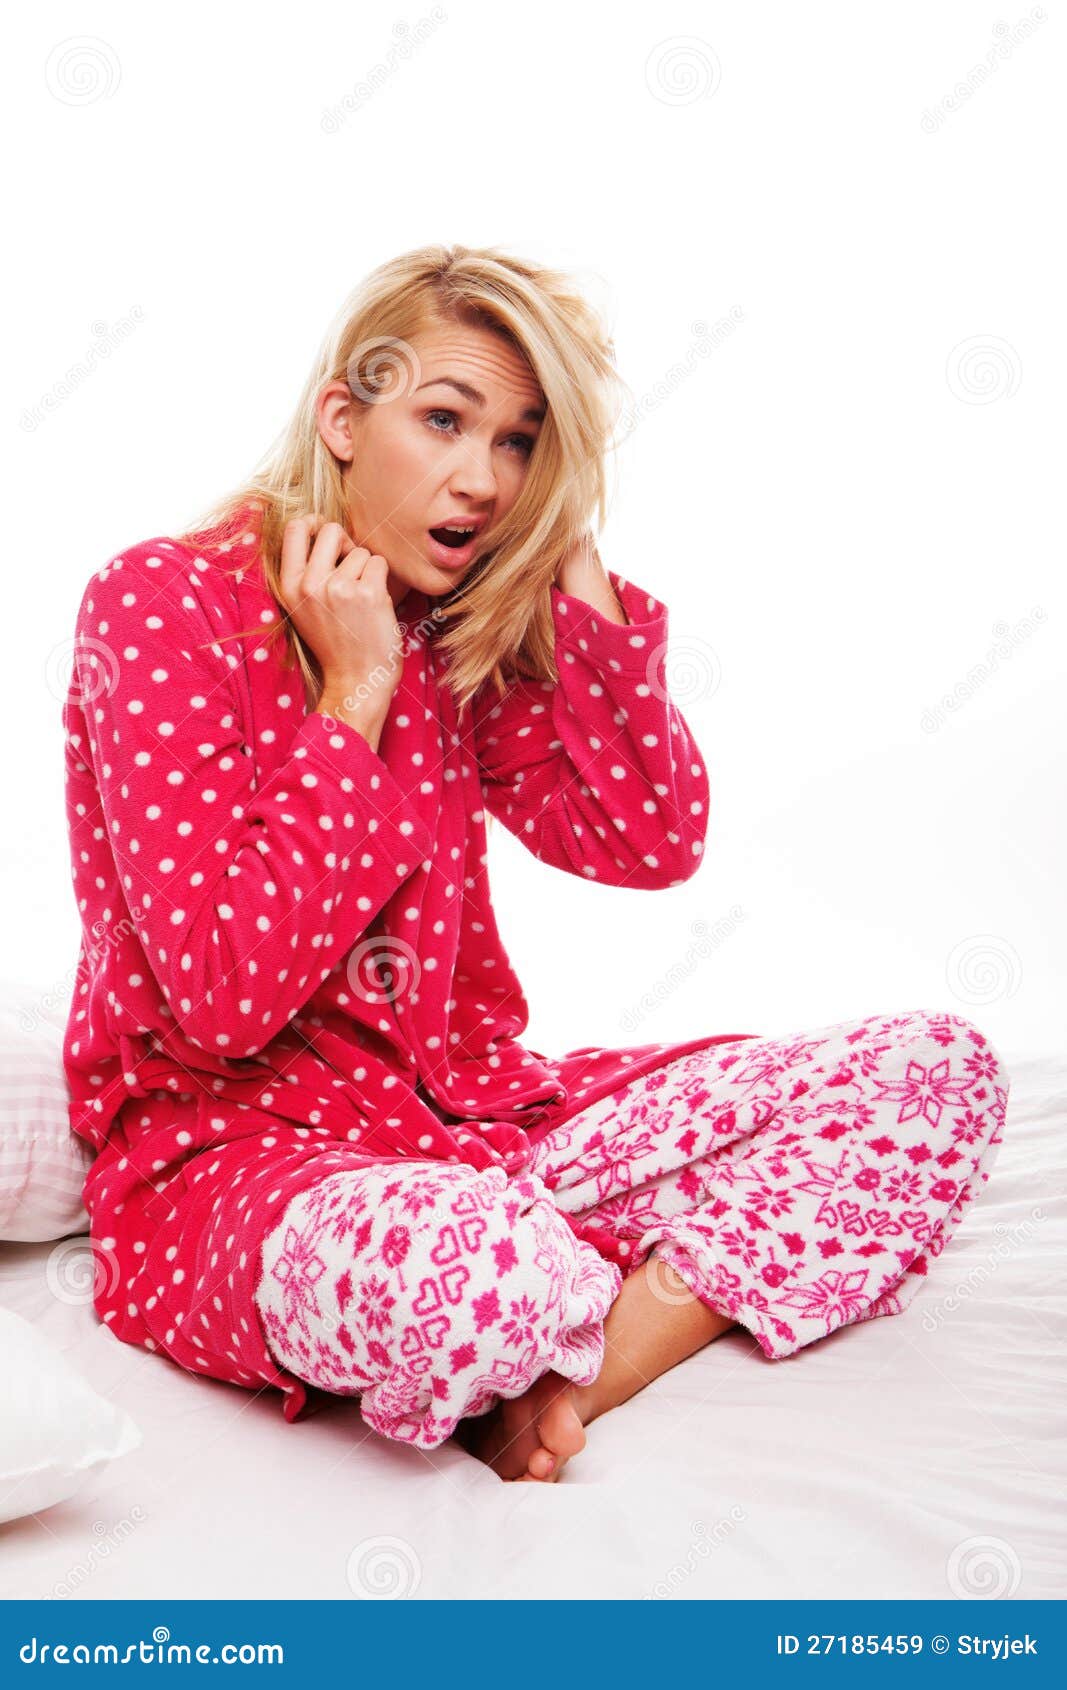 Varen Renderen Oneffenheden Woman in pyjamas yawning stock image. Image of beautiful - 27185459